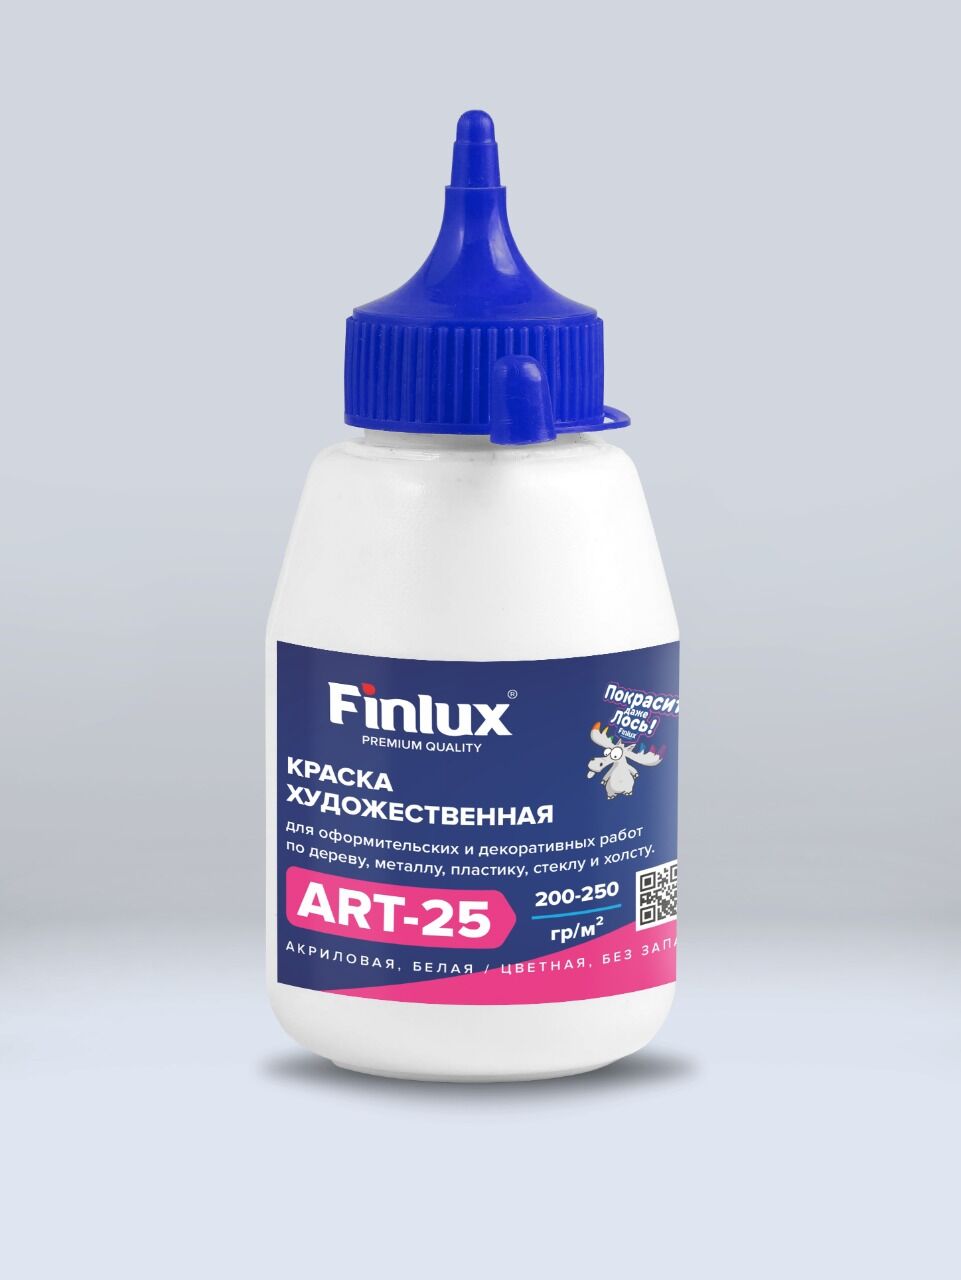 Акриловая краска художественная для рисования Голубой, 0,3 кг Finlux ART 25 –матовая